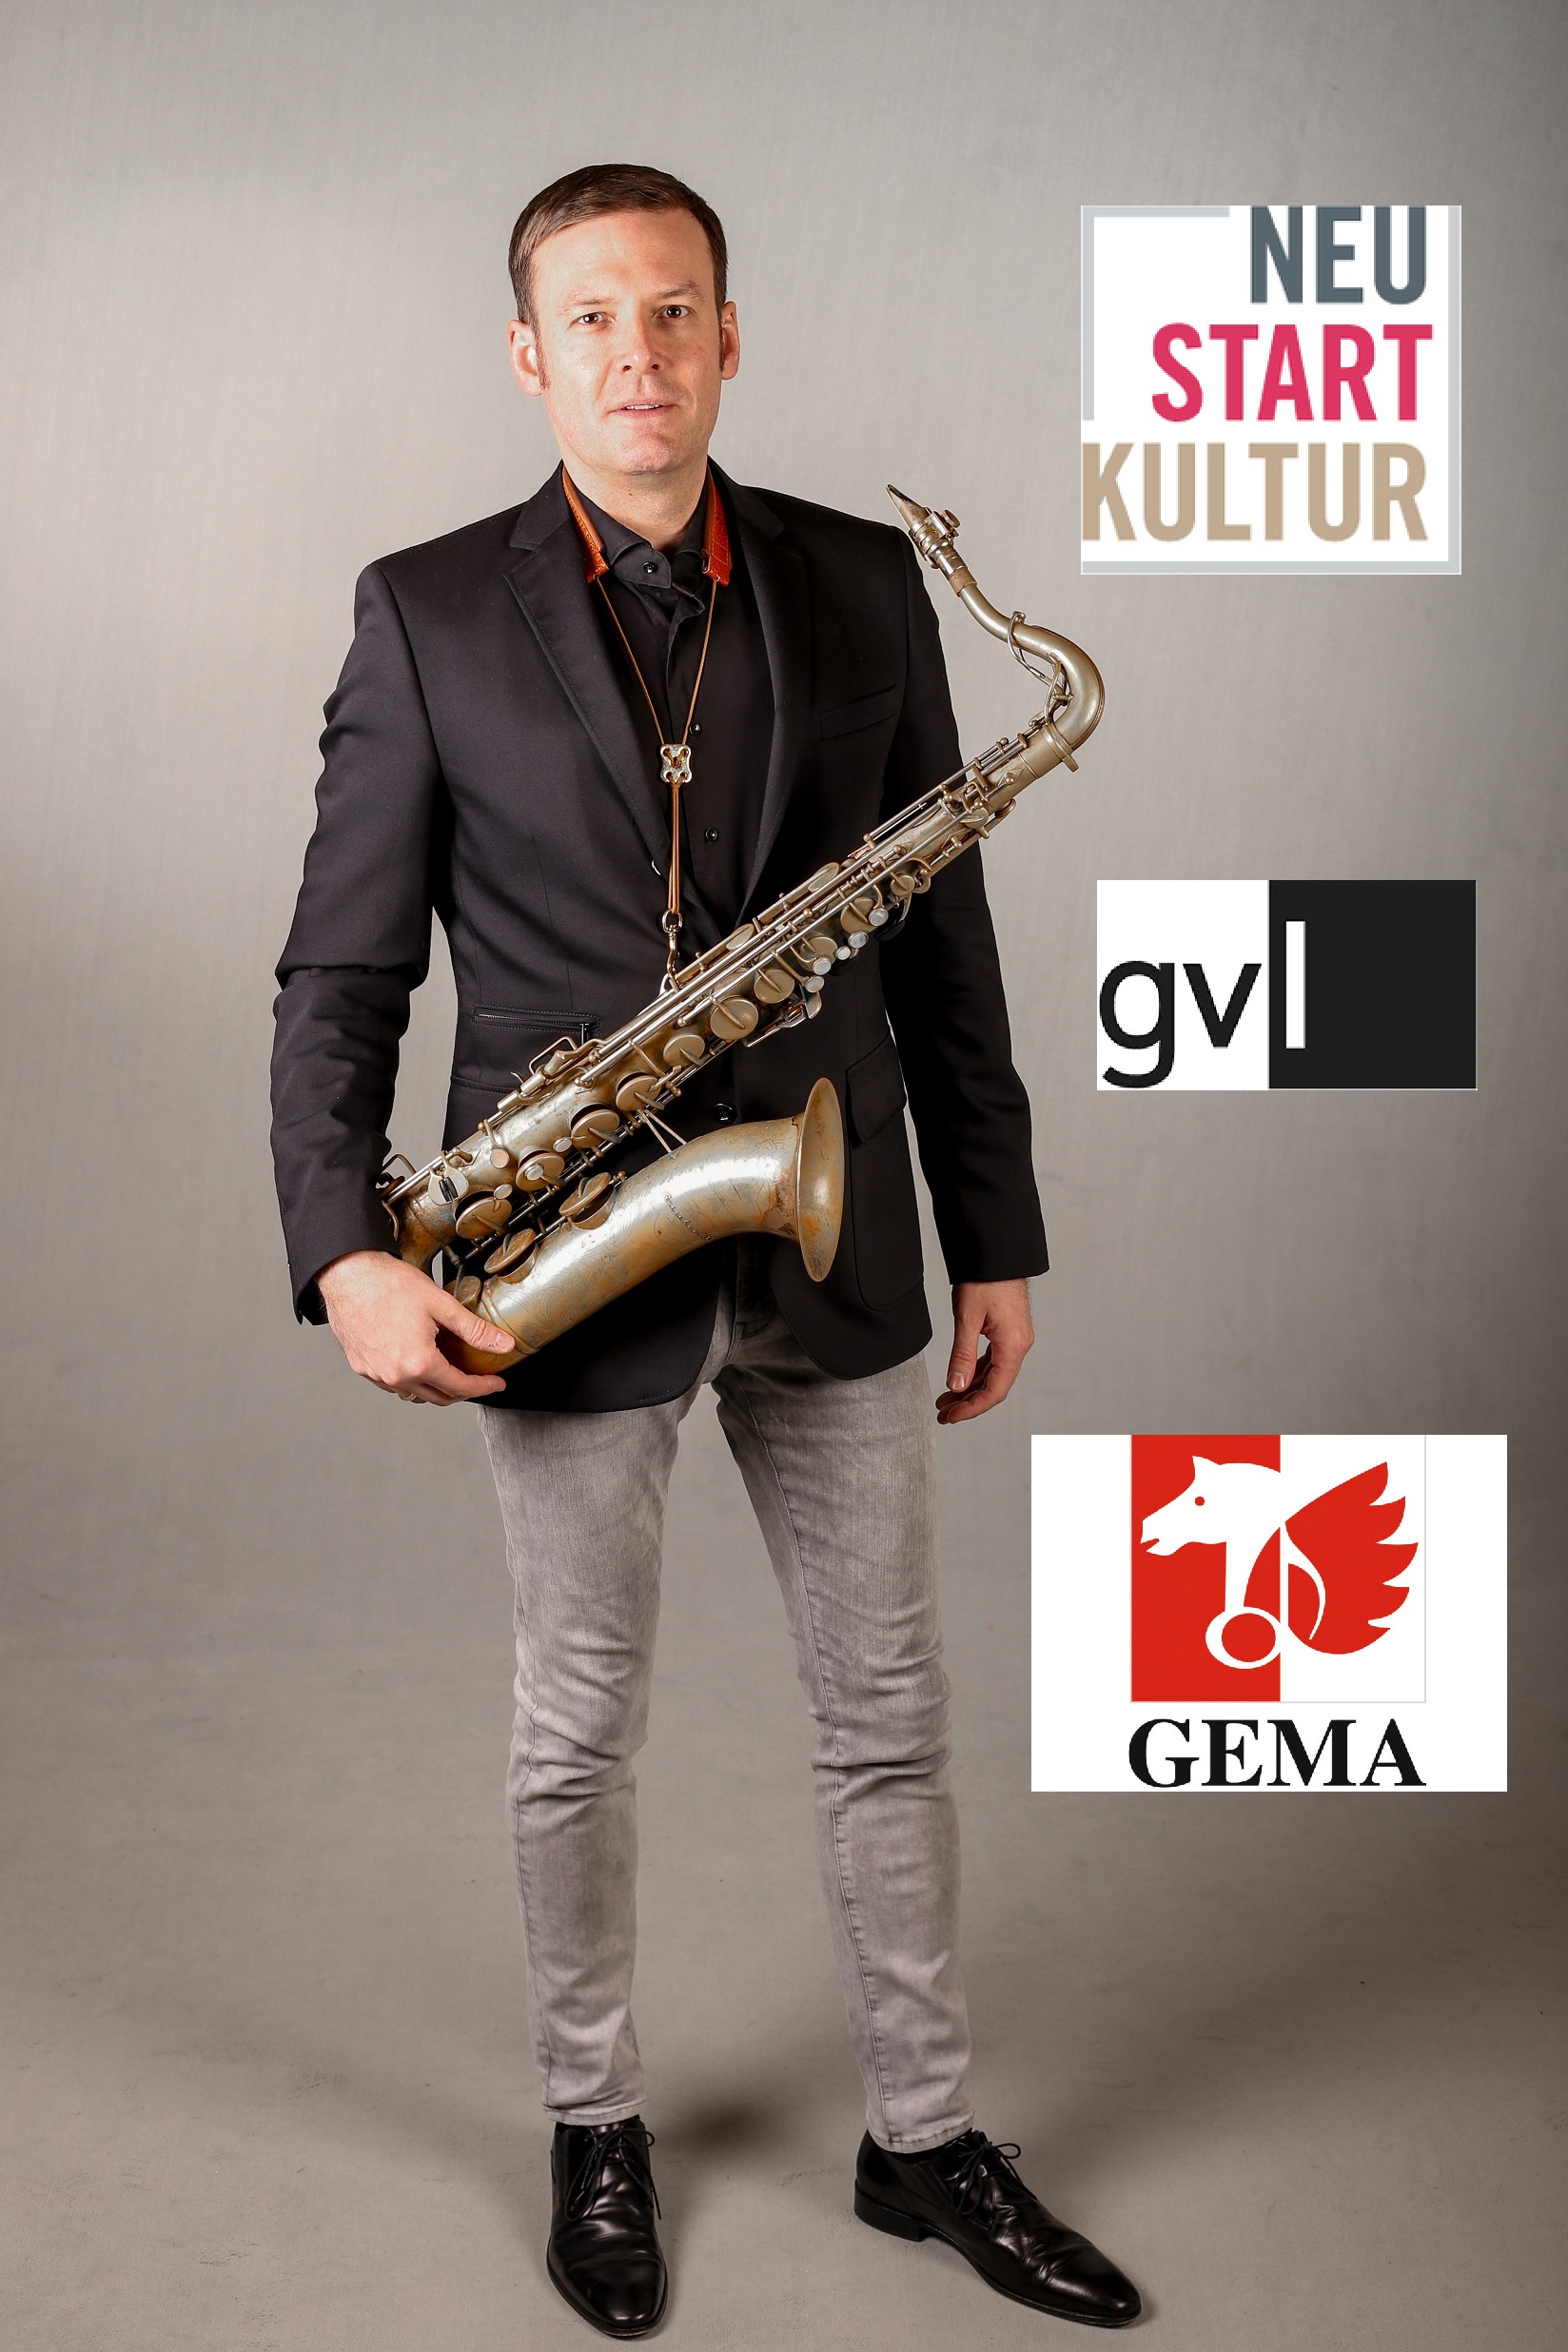 Saxophonist David Milzow - Stipendium GVL-Neustart Kultur und GEMA